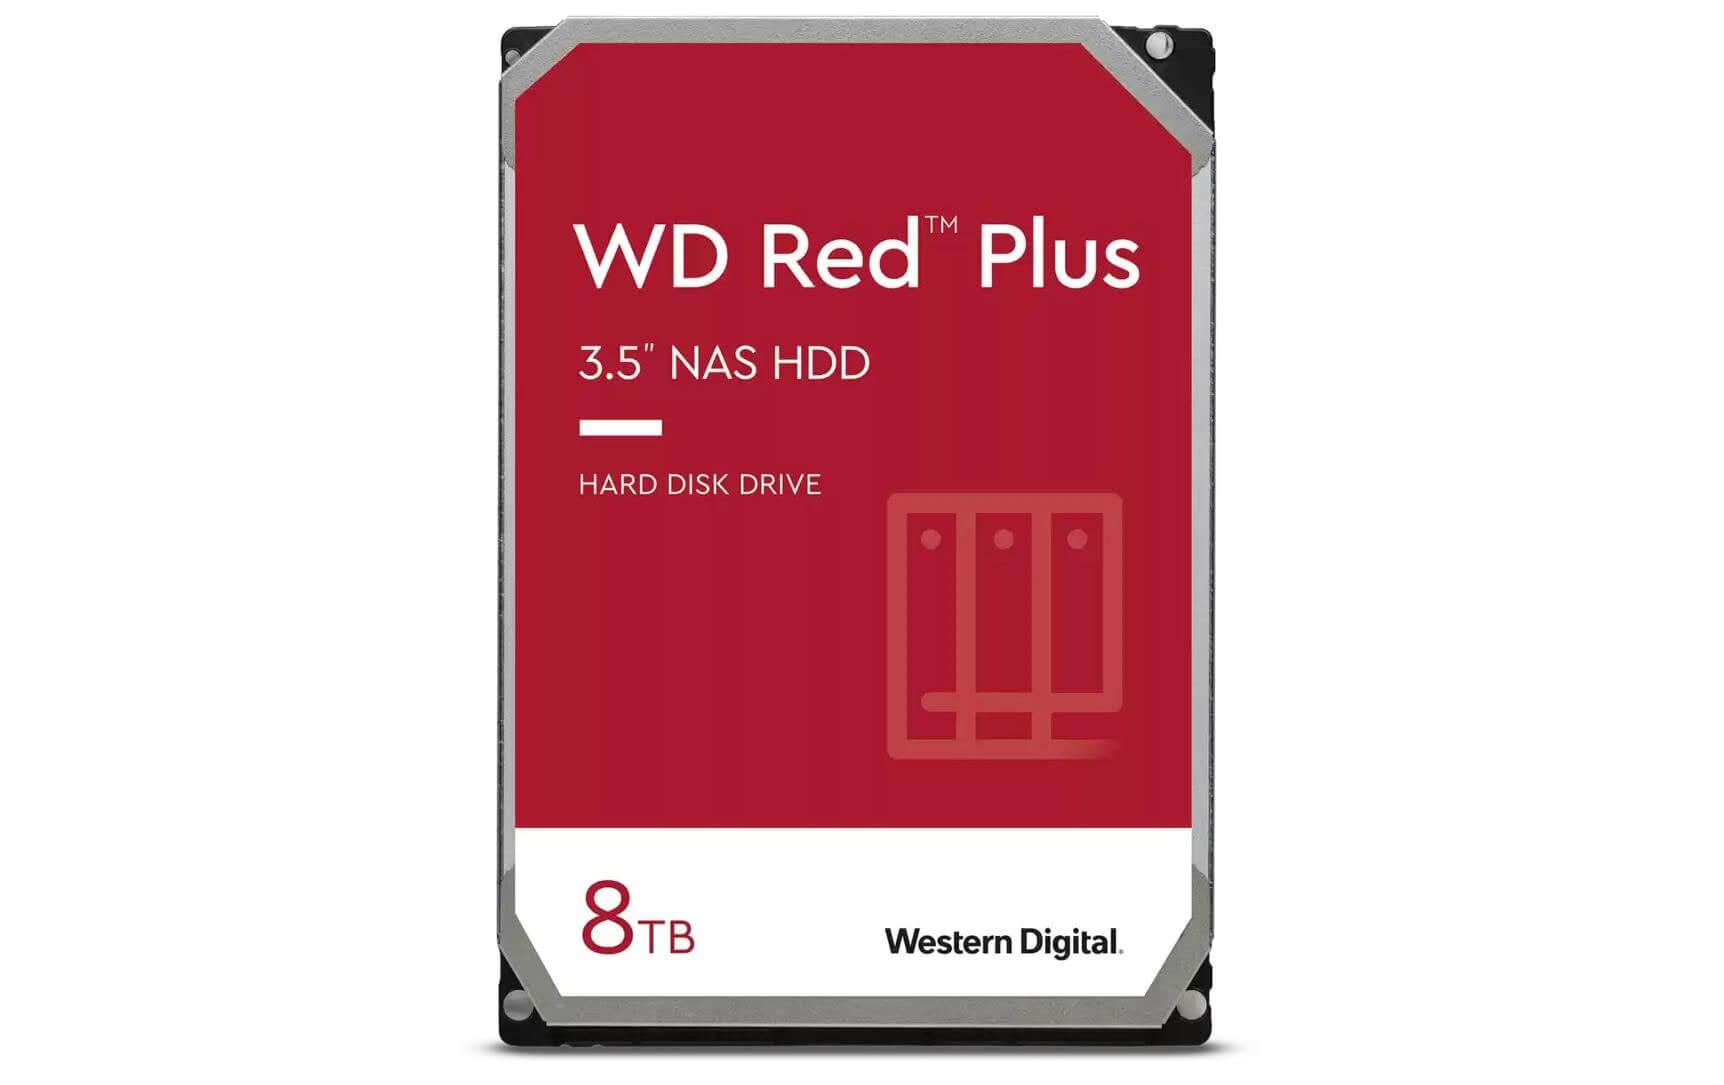 WD Disco rigido Western Digital WD Red Plus 3 5" SATA 8 TB wd